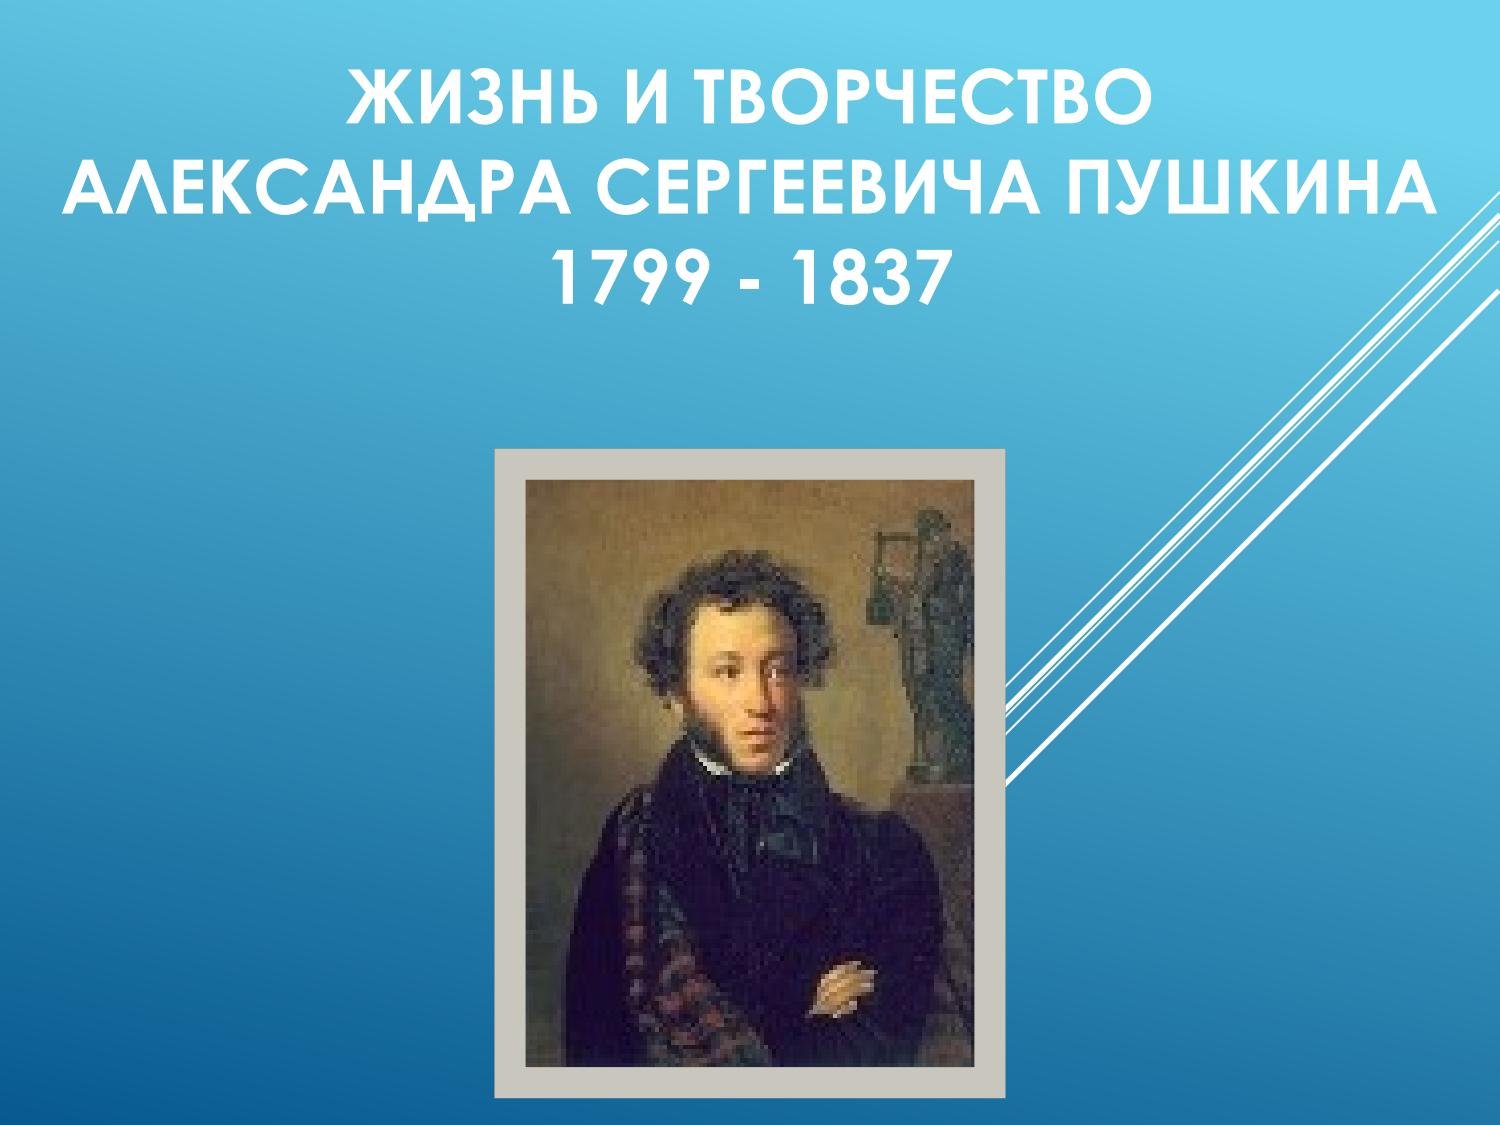 Пушкин презентации 9 класс. Пушкин 1799-1837. Пушкин презентация. Презентация про Пушкина.